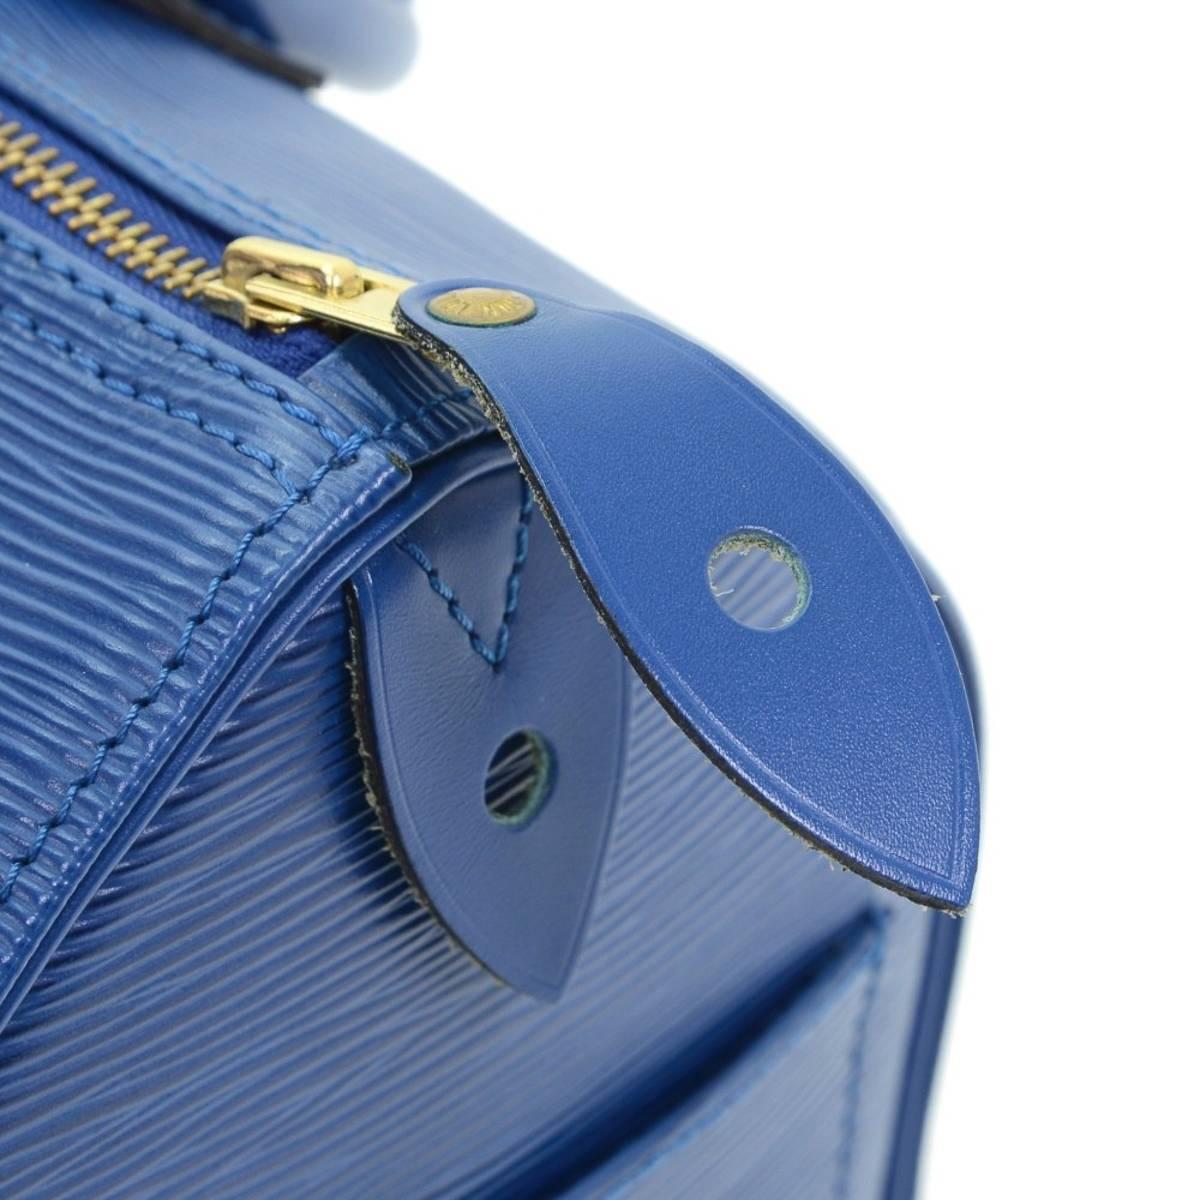 1995 Louis Vuitton Blue Epi Leather Vintage Speedy 25 1